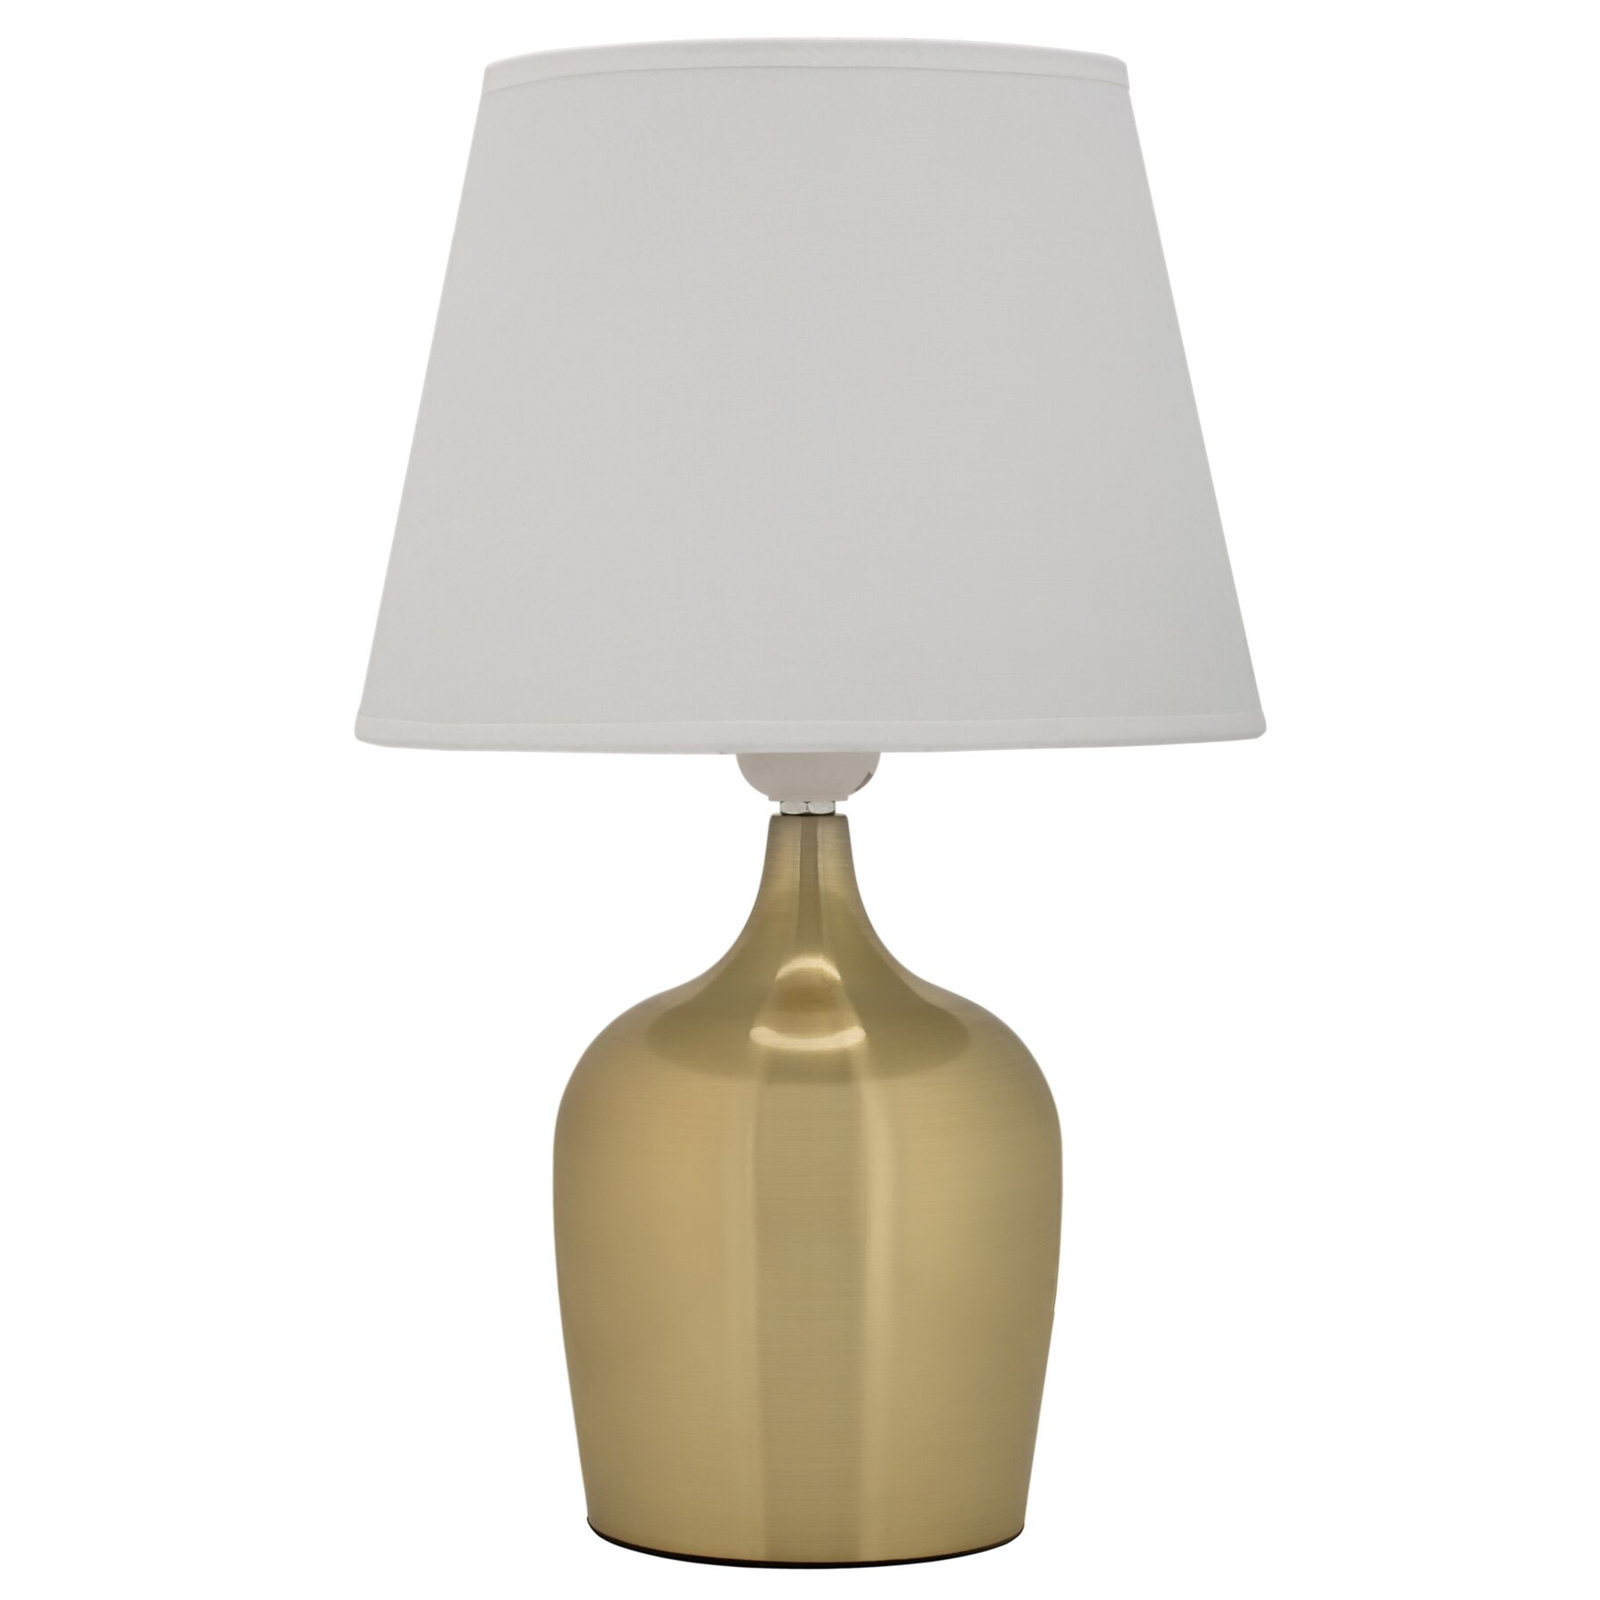 Pauleen Golden Glamour table lamp in gold/white